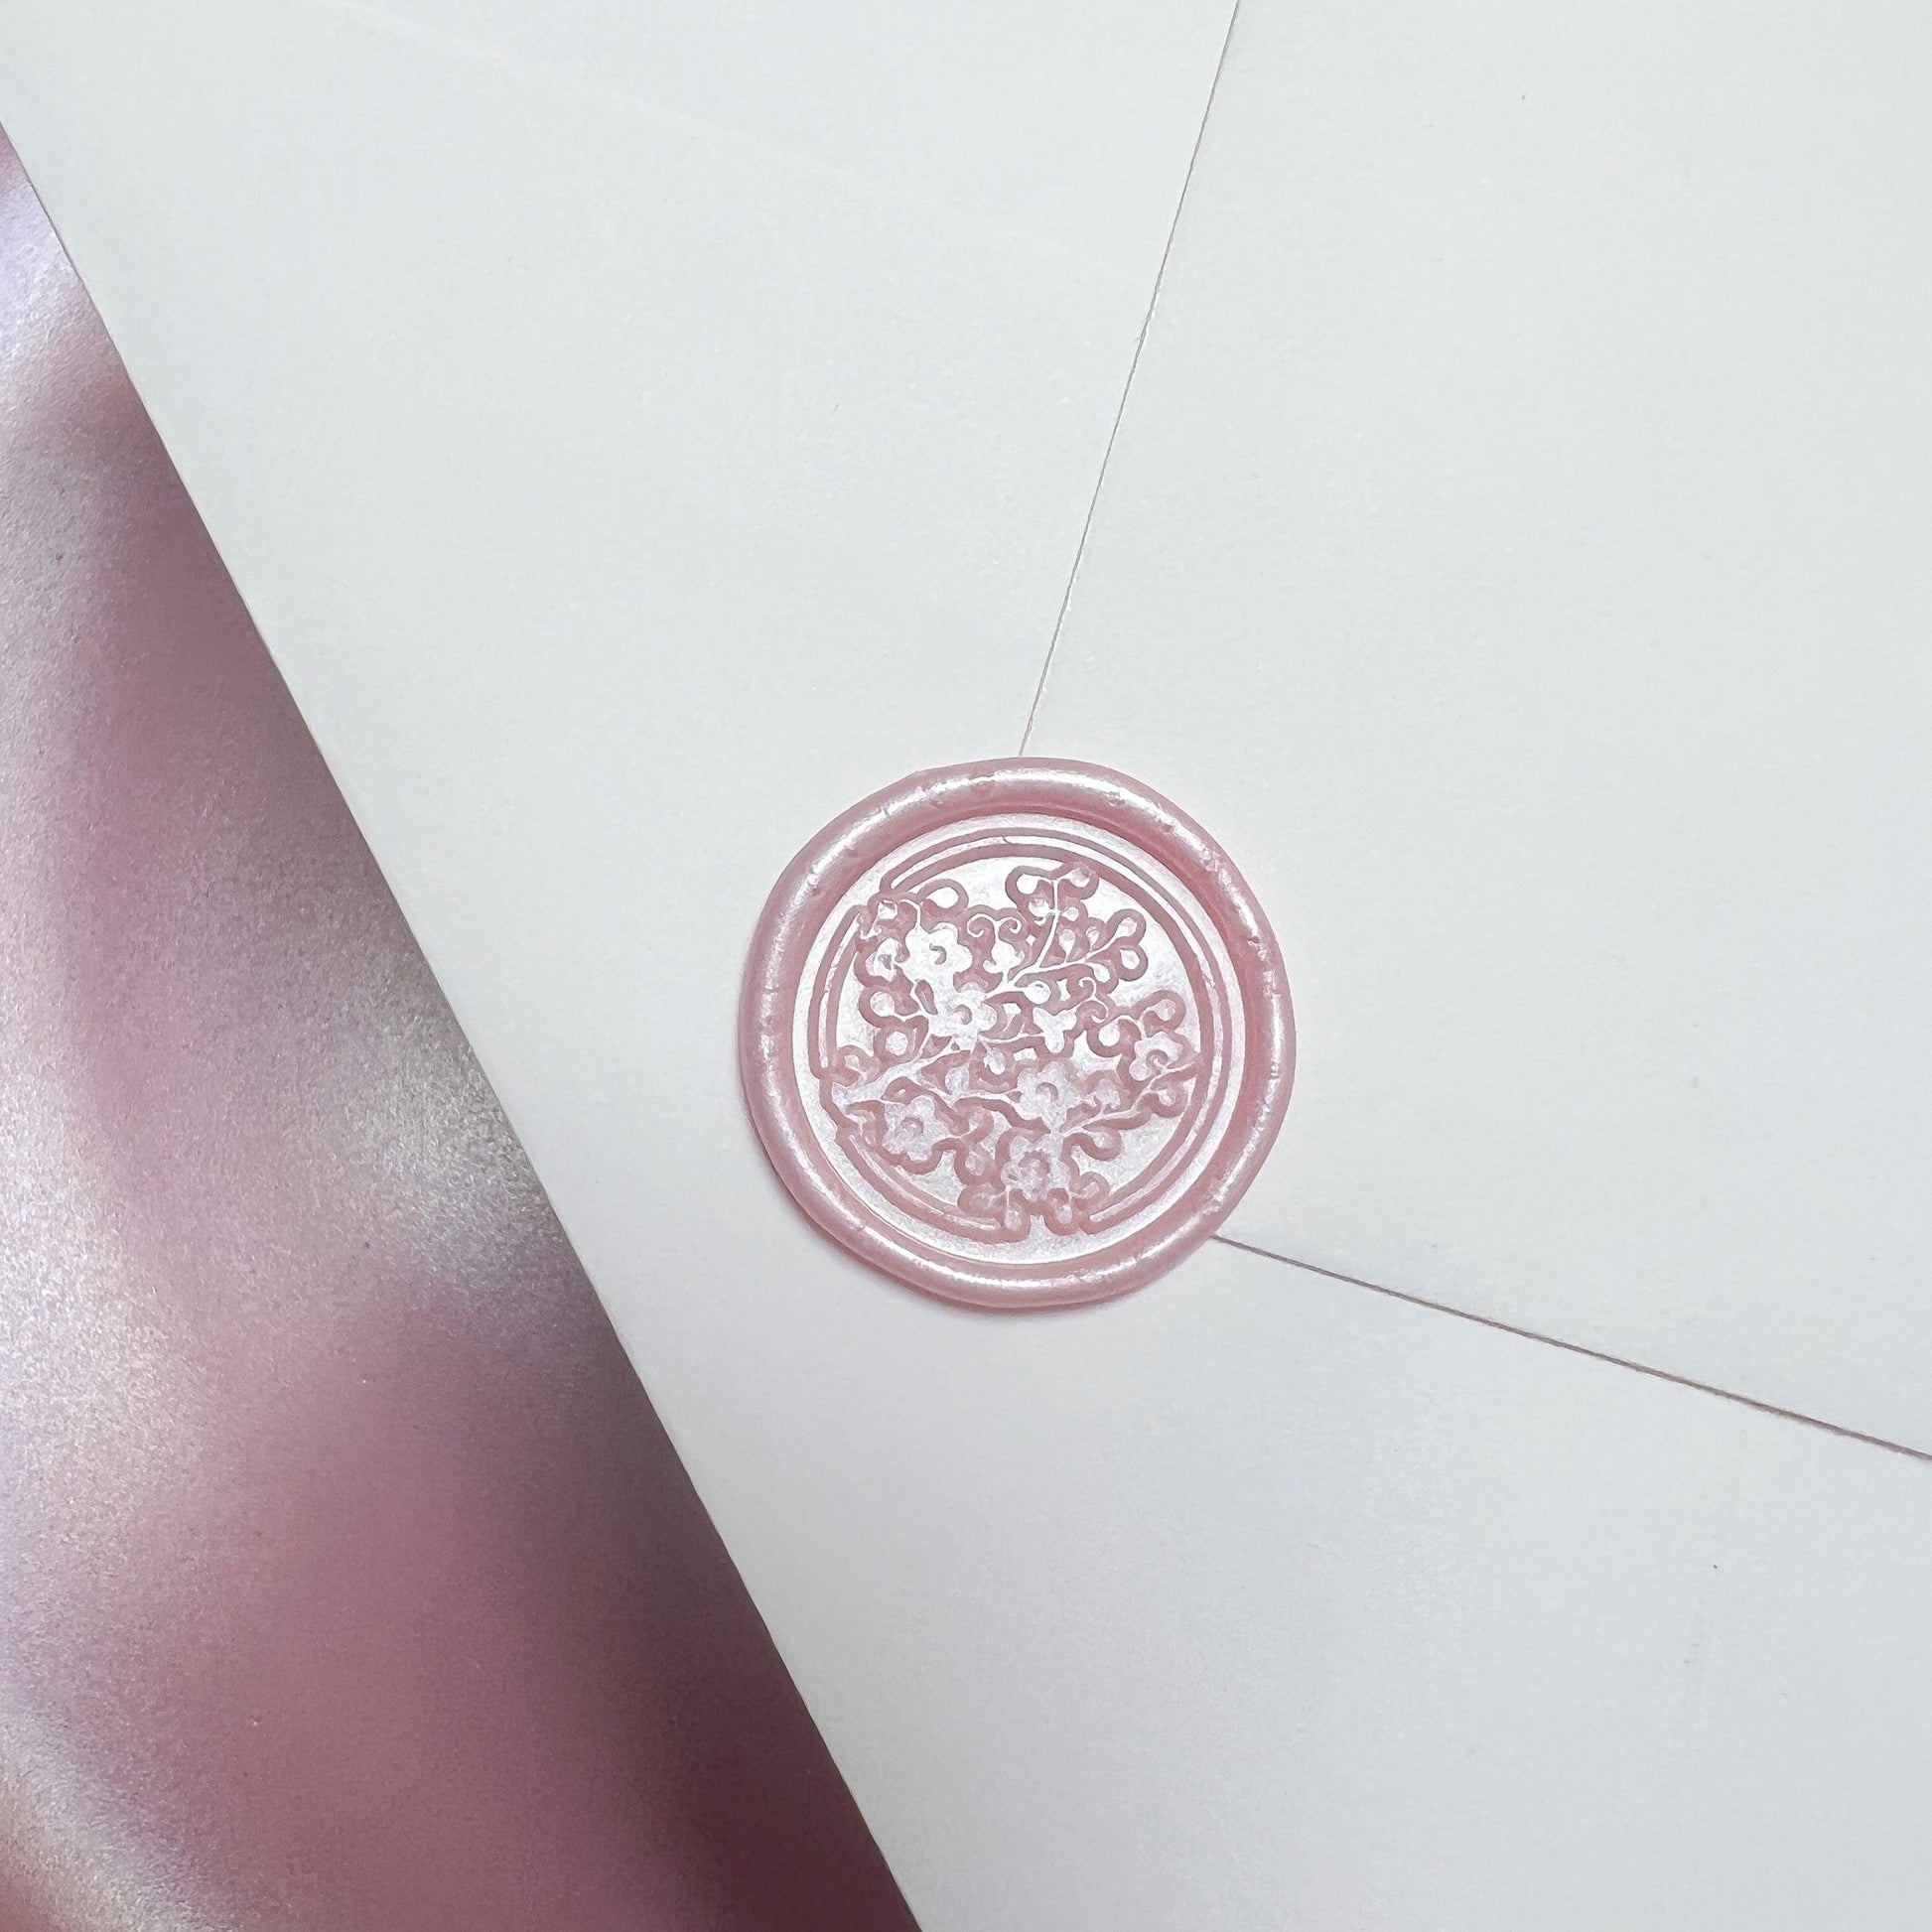 Pearl Pink Cherry Blossom Wax Seals - Glitzy Prints